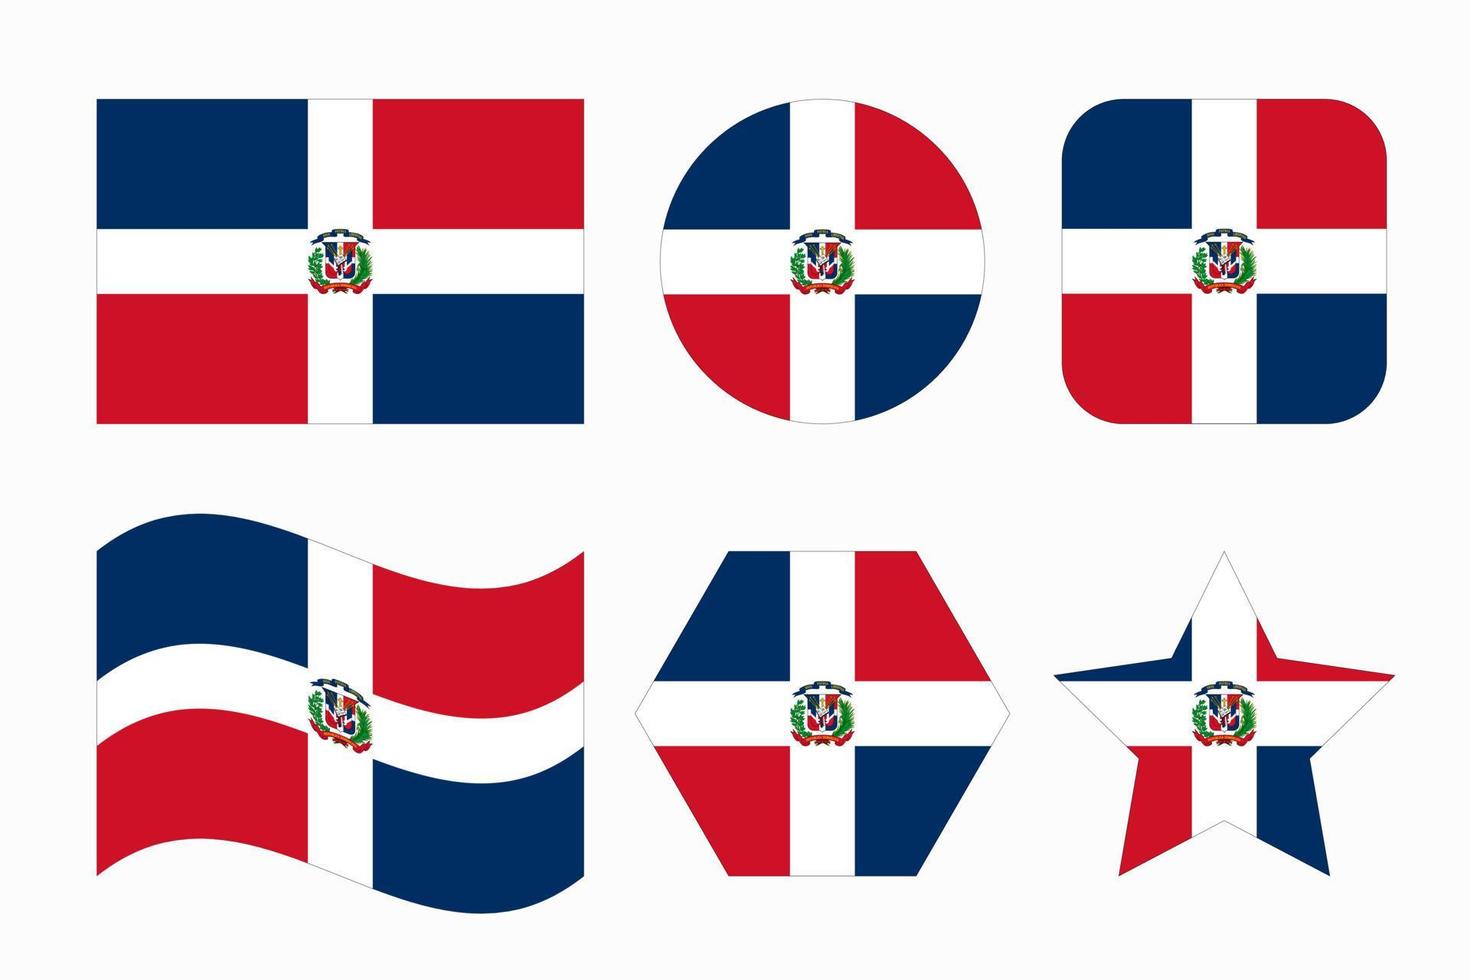 ilustración simple de la bandera de la república dominicana para el día de la independencia o las elecciones vector